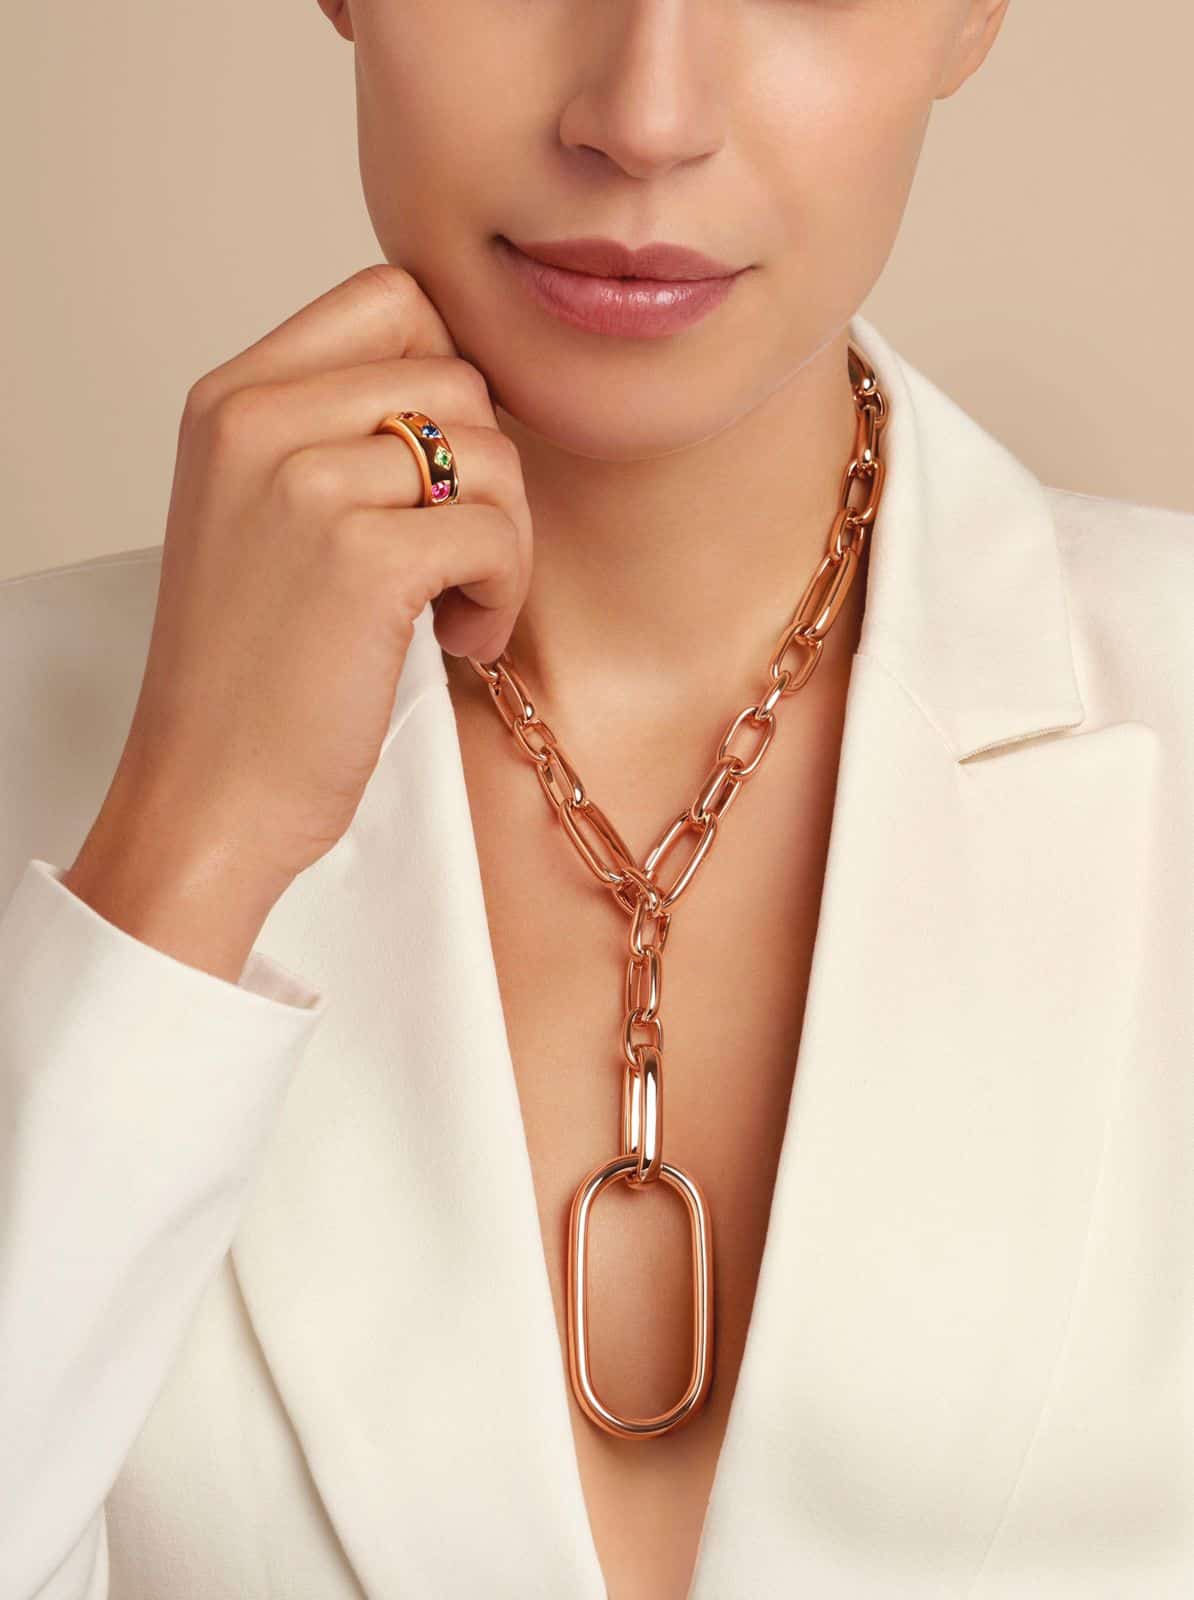 POMELLATO przedstawia nową i elegancką kolekcję naszyjników, bransoletek i kolczyków ICONICA, która emanuje współczesną mediolańską elegancją.